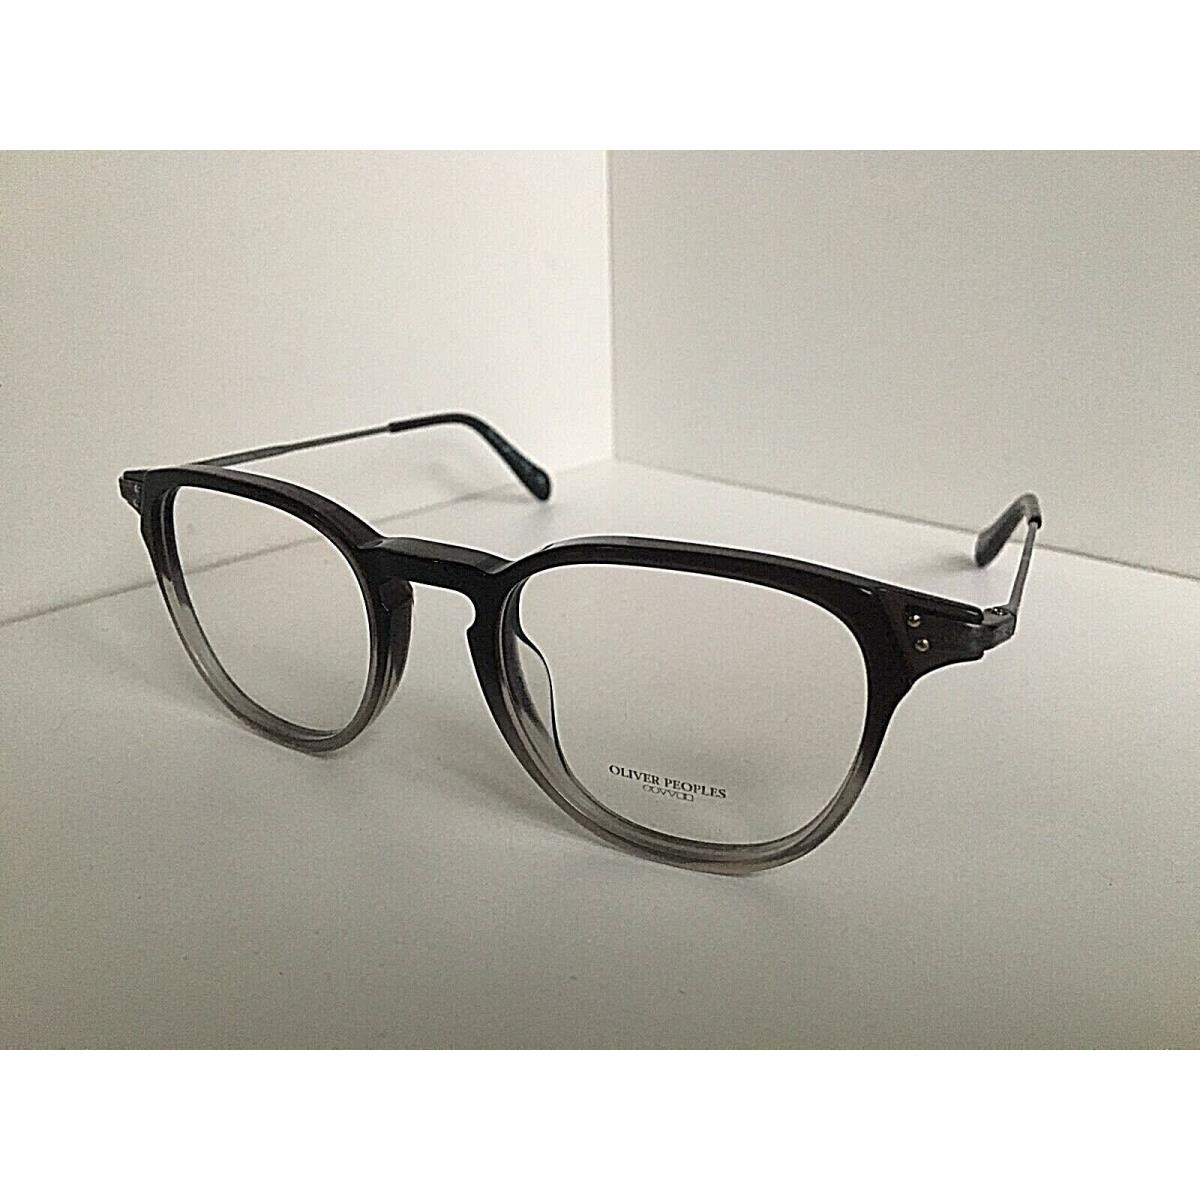 Oliver Peoples eyeglasses Designer - Black Frame 0